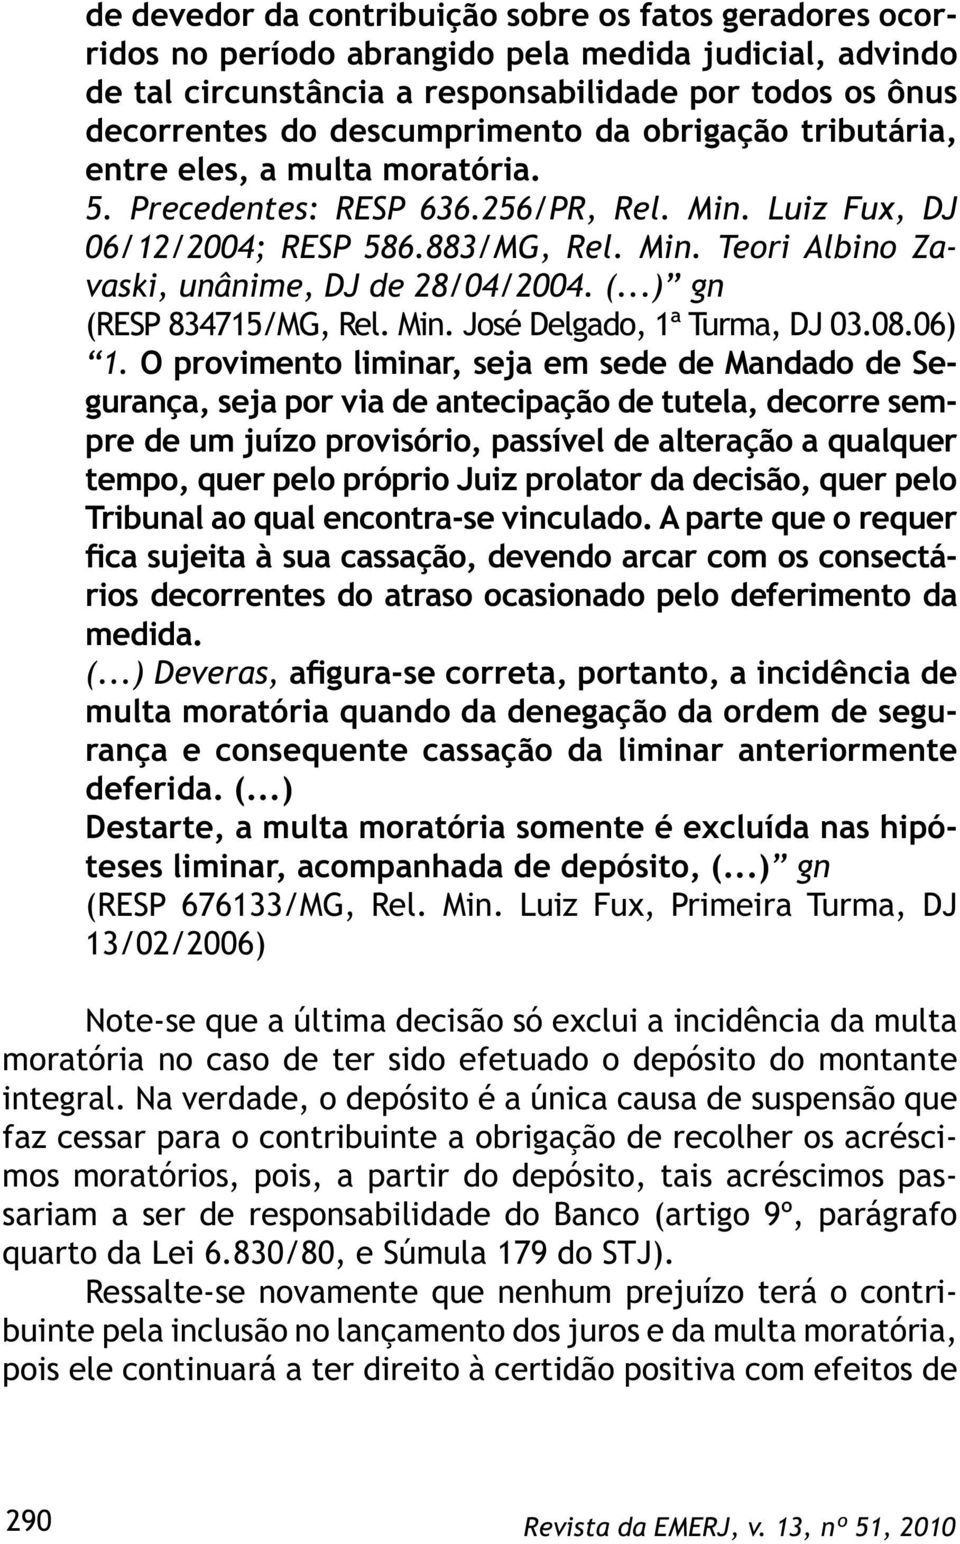 (...) gn (RESP 834715/MG, Rel. Min. José Delgado, 1ª Turma, DJ 03.08.06) 1.